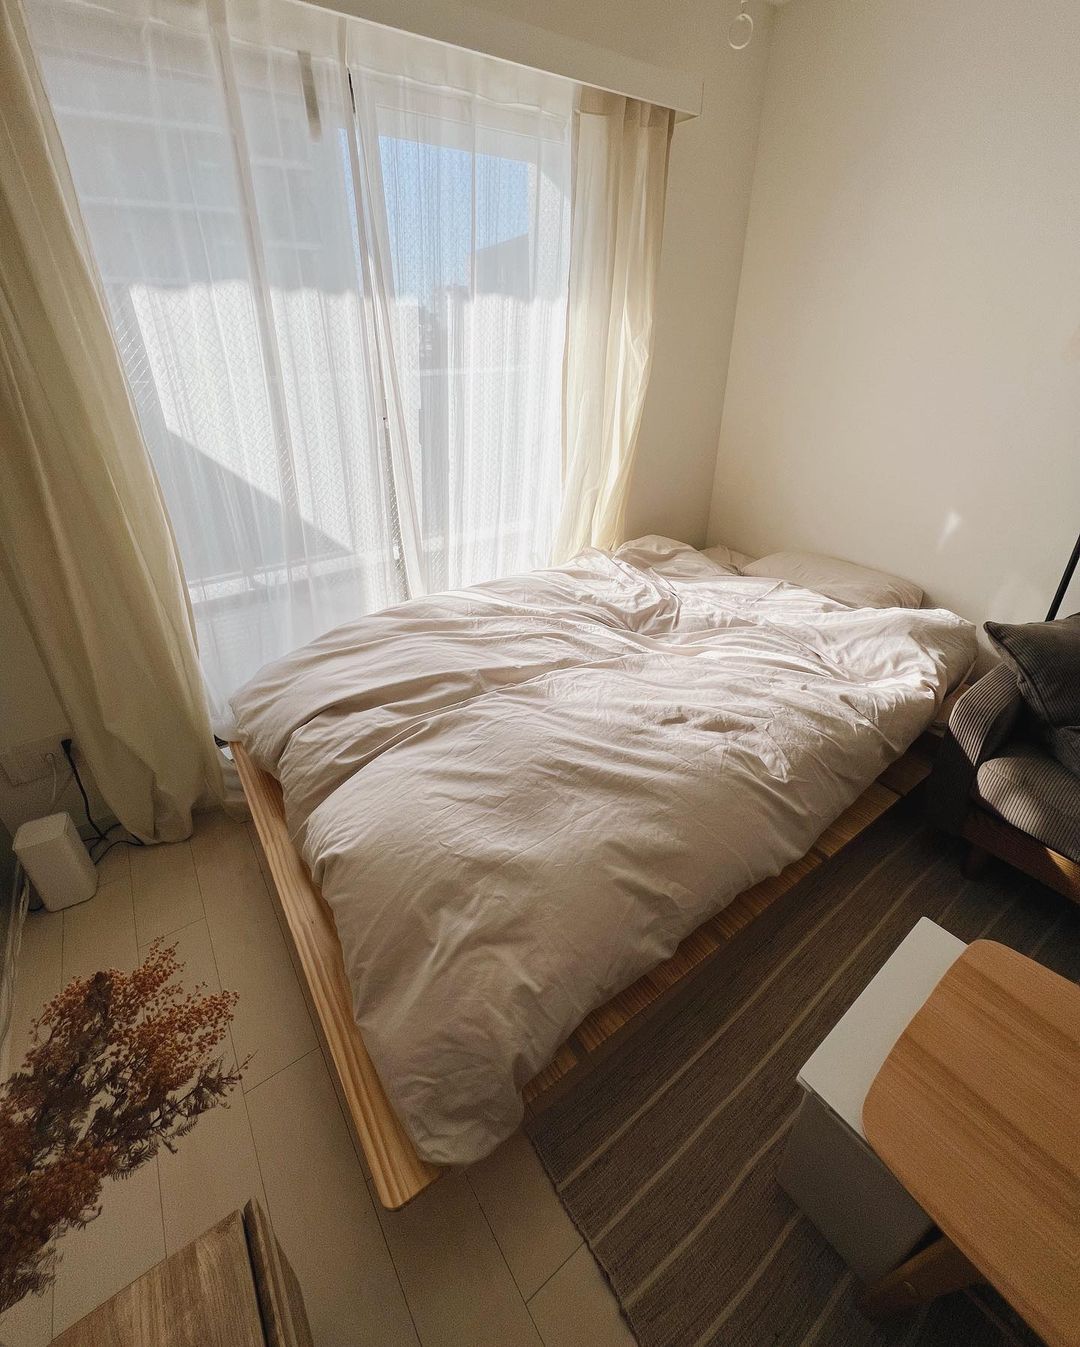 一人暮らしの1K・ワンルームでは一番大きく場所をとるベッド。「なるべく低いものを」と選ばれている方が多いです。こちらはLOWYAのもの。（このお部屋はこちら）